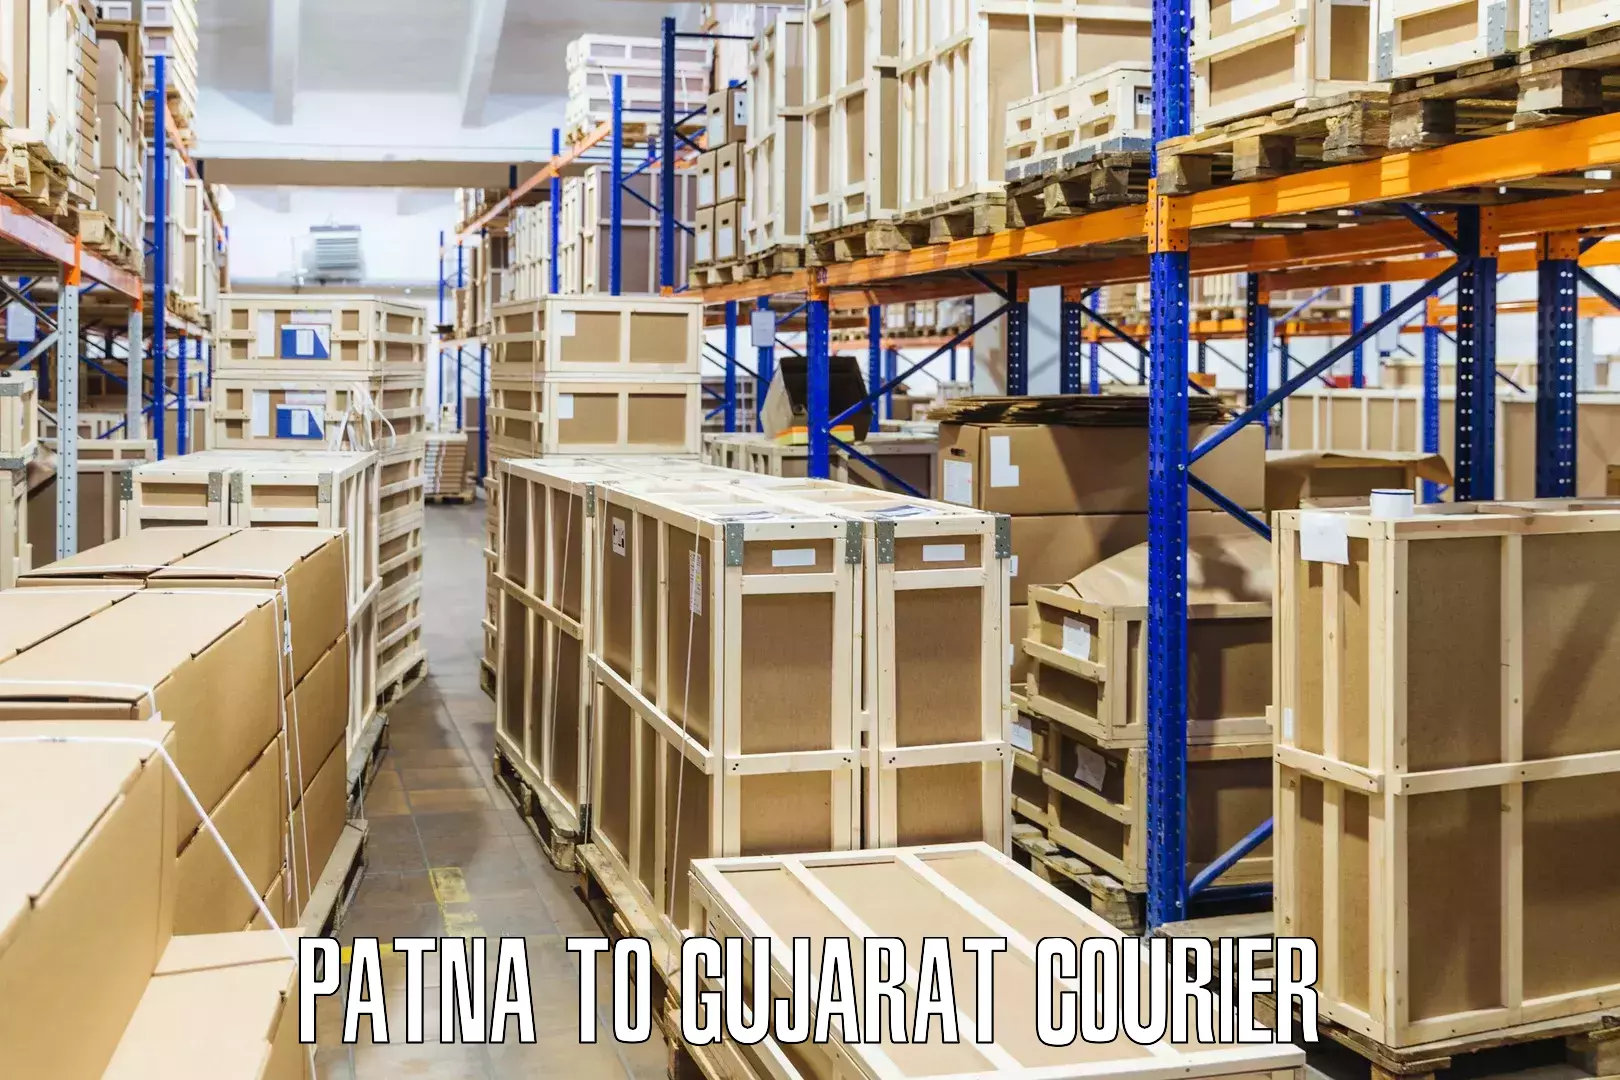 Courier service innovation Patna to Porbandar